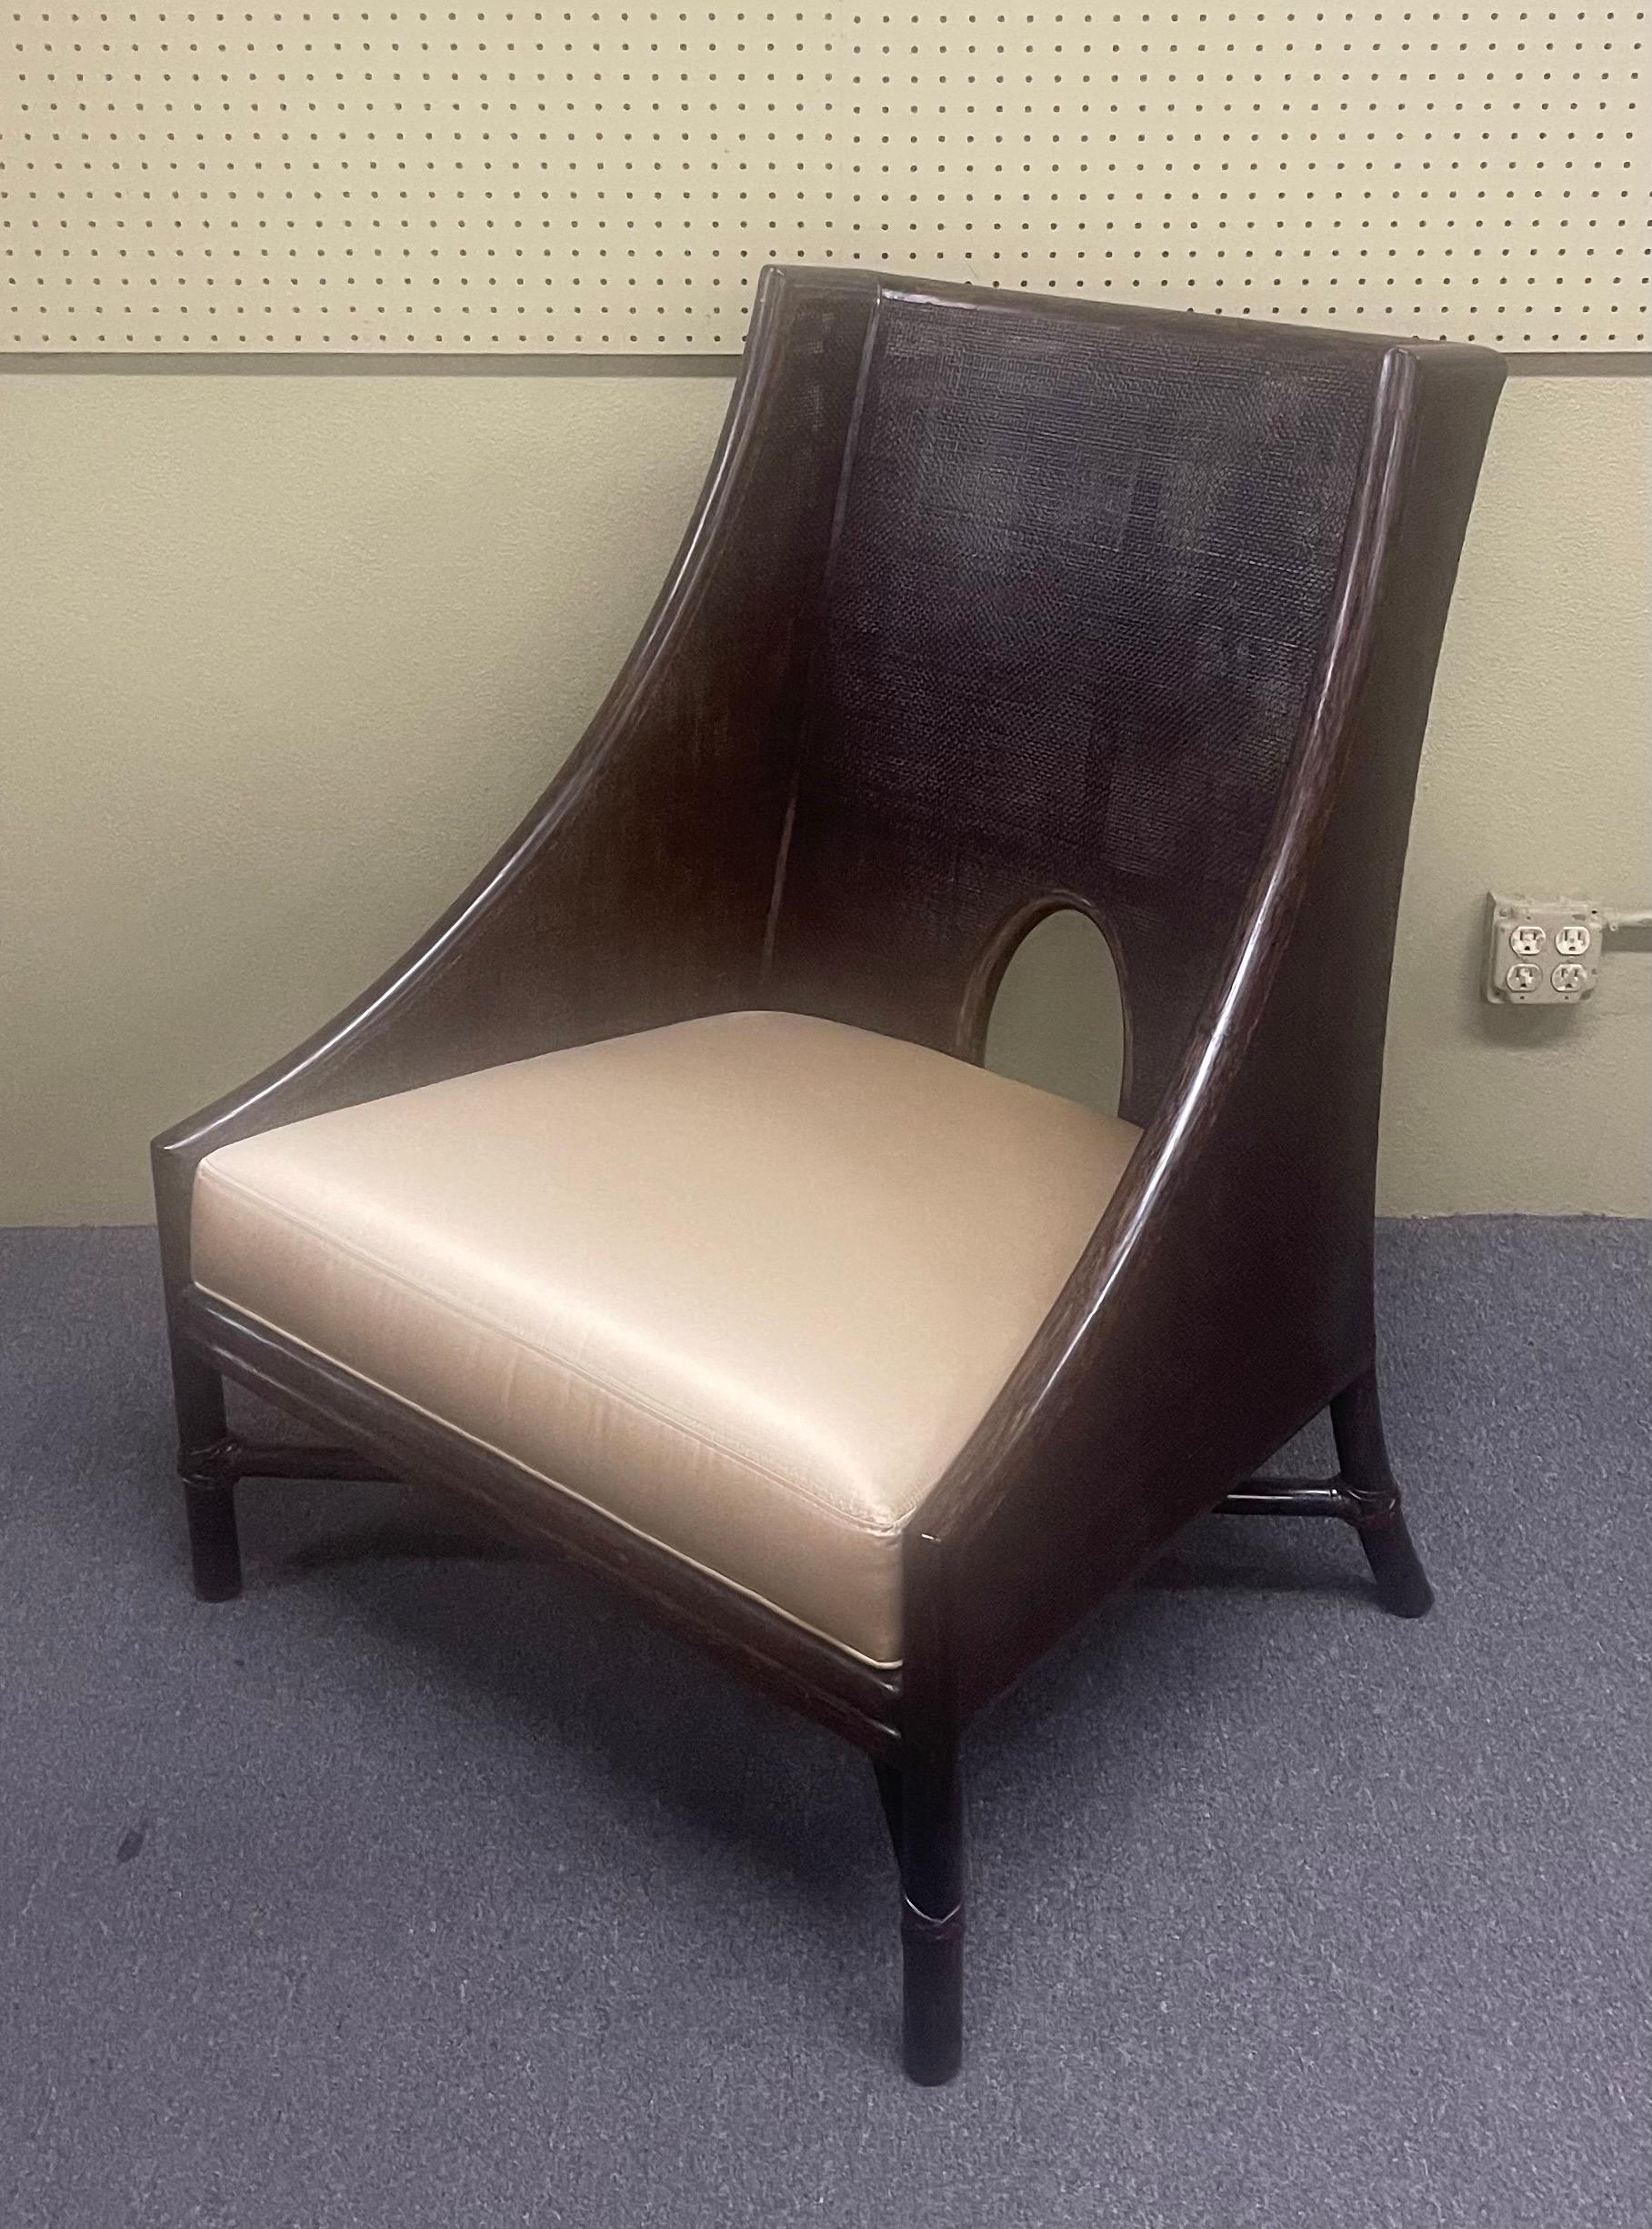 Une très belle chaise longue cannée de Barbara Barry pour McGuire Furniture de San Francisco, circa 2006. La chaise présente un champ de cannage joliment encadré de rotin et accentué par le détail de découpe en demi-ovale caractéristique de la